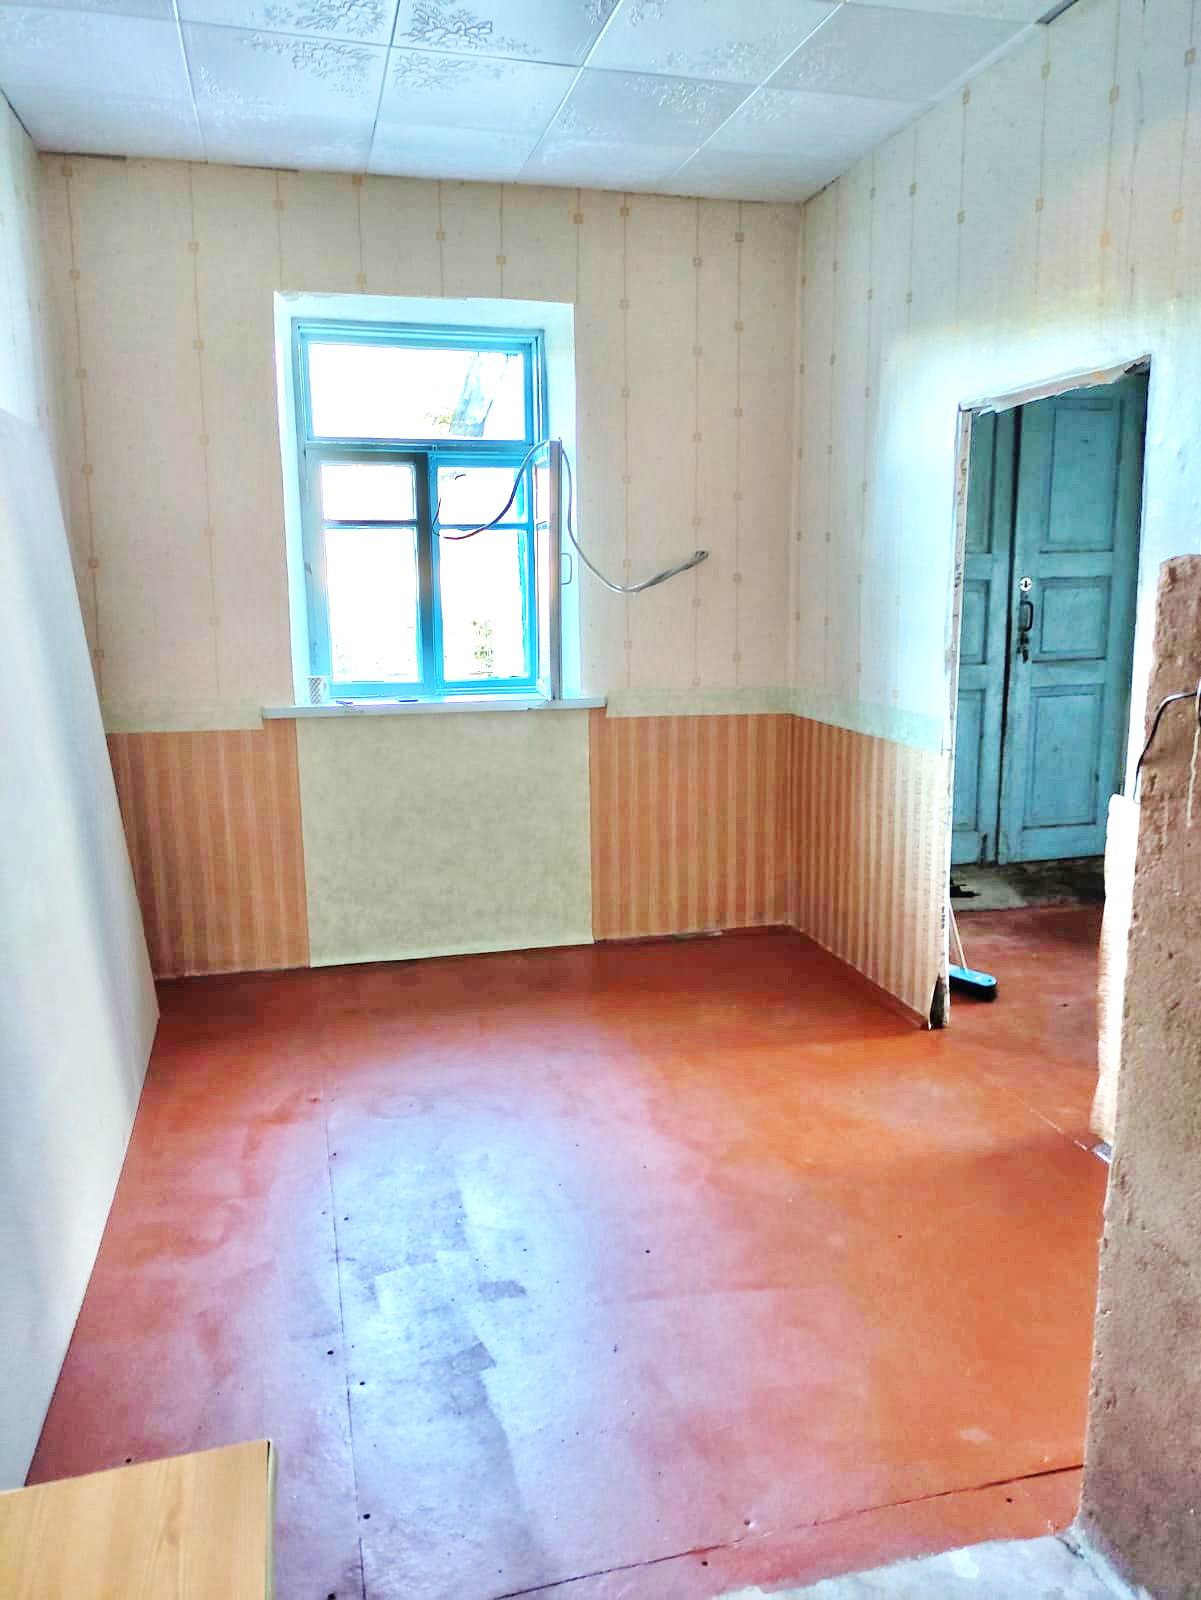 Продается дом в д. Бадежи, 85 км от МКАД (Копыльский район). - фотография